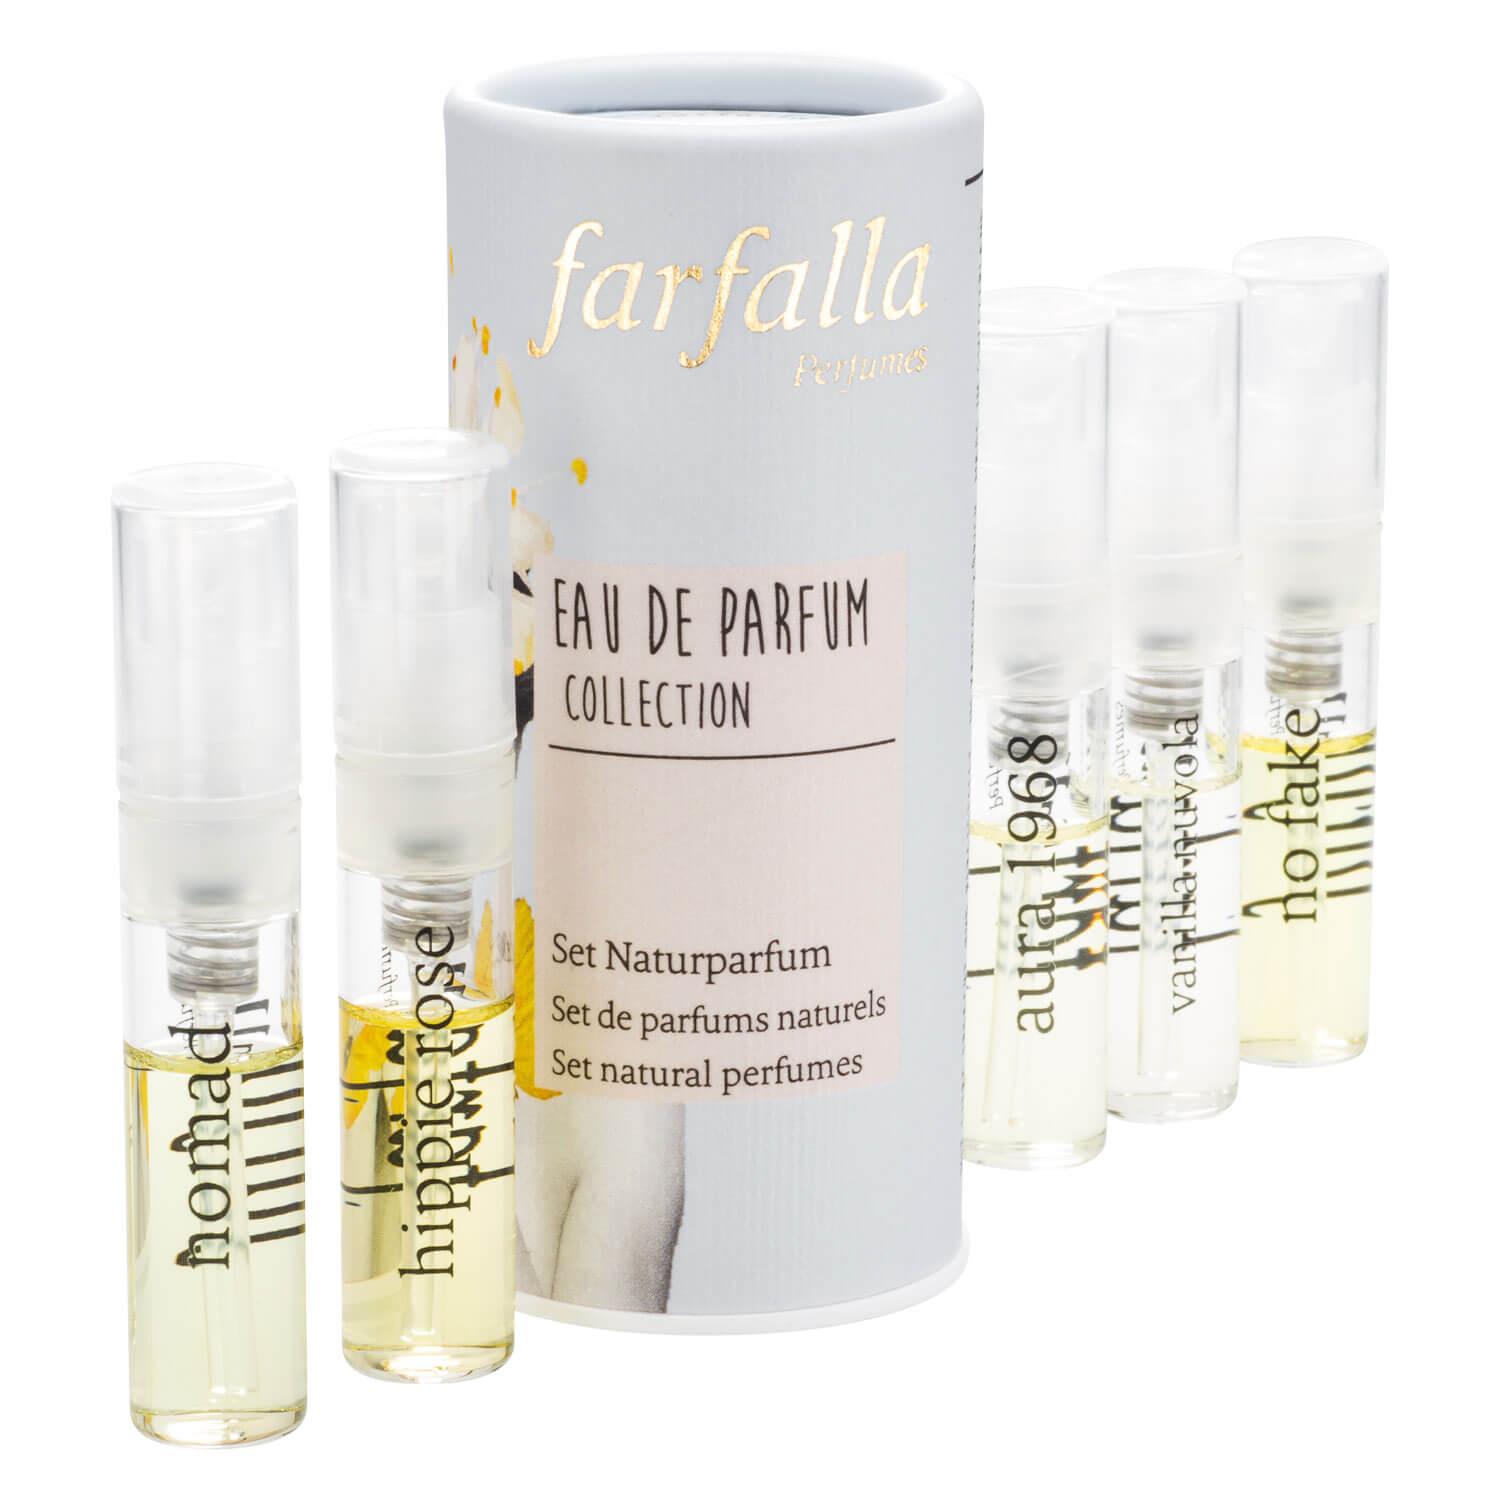 Farfalla Fragrance - Eau de Parfum Collection